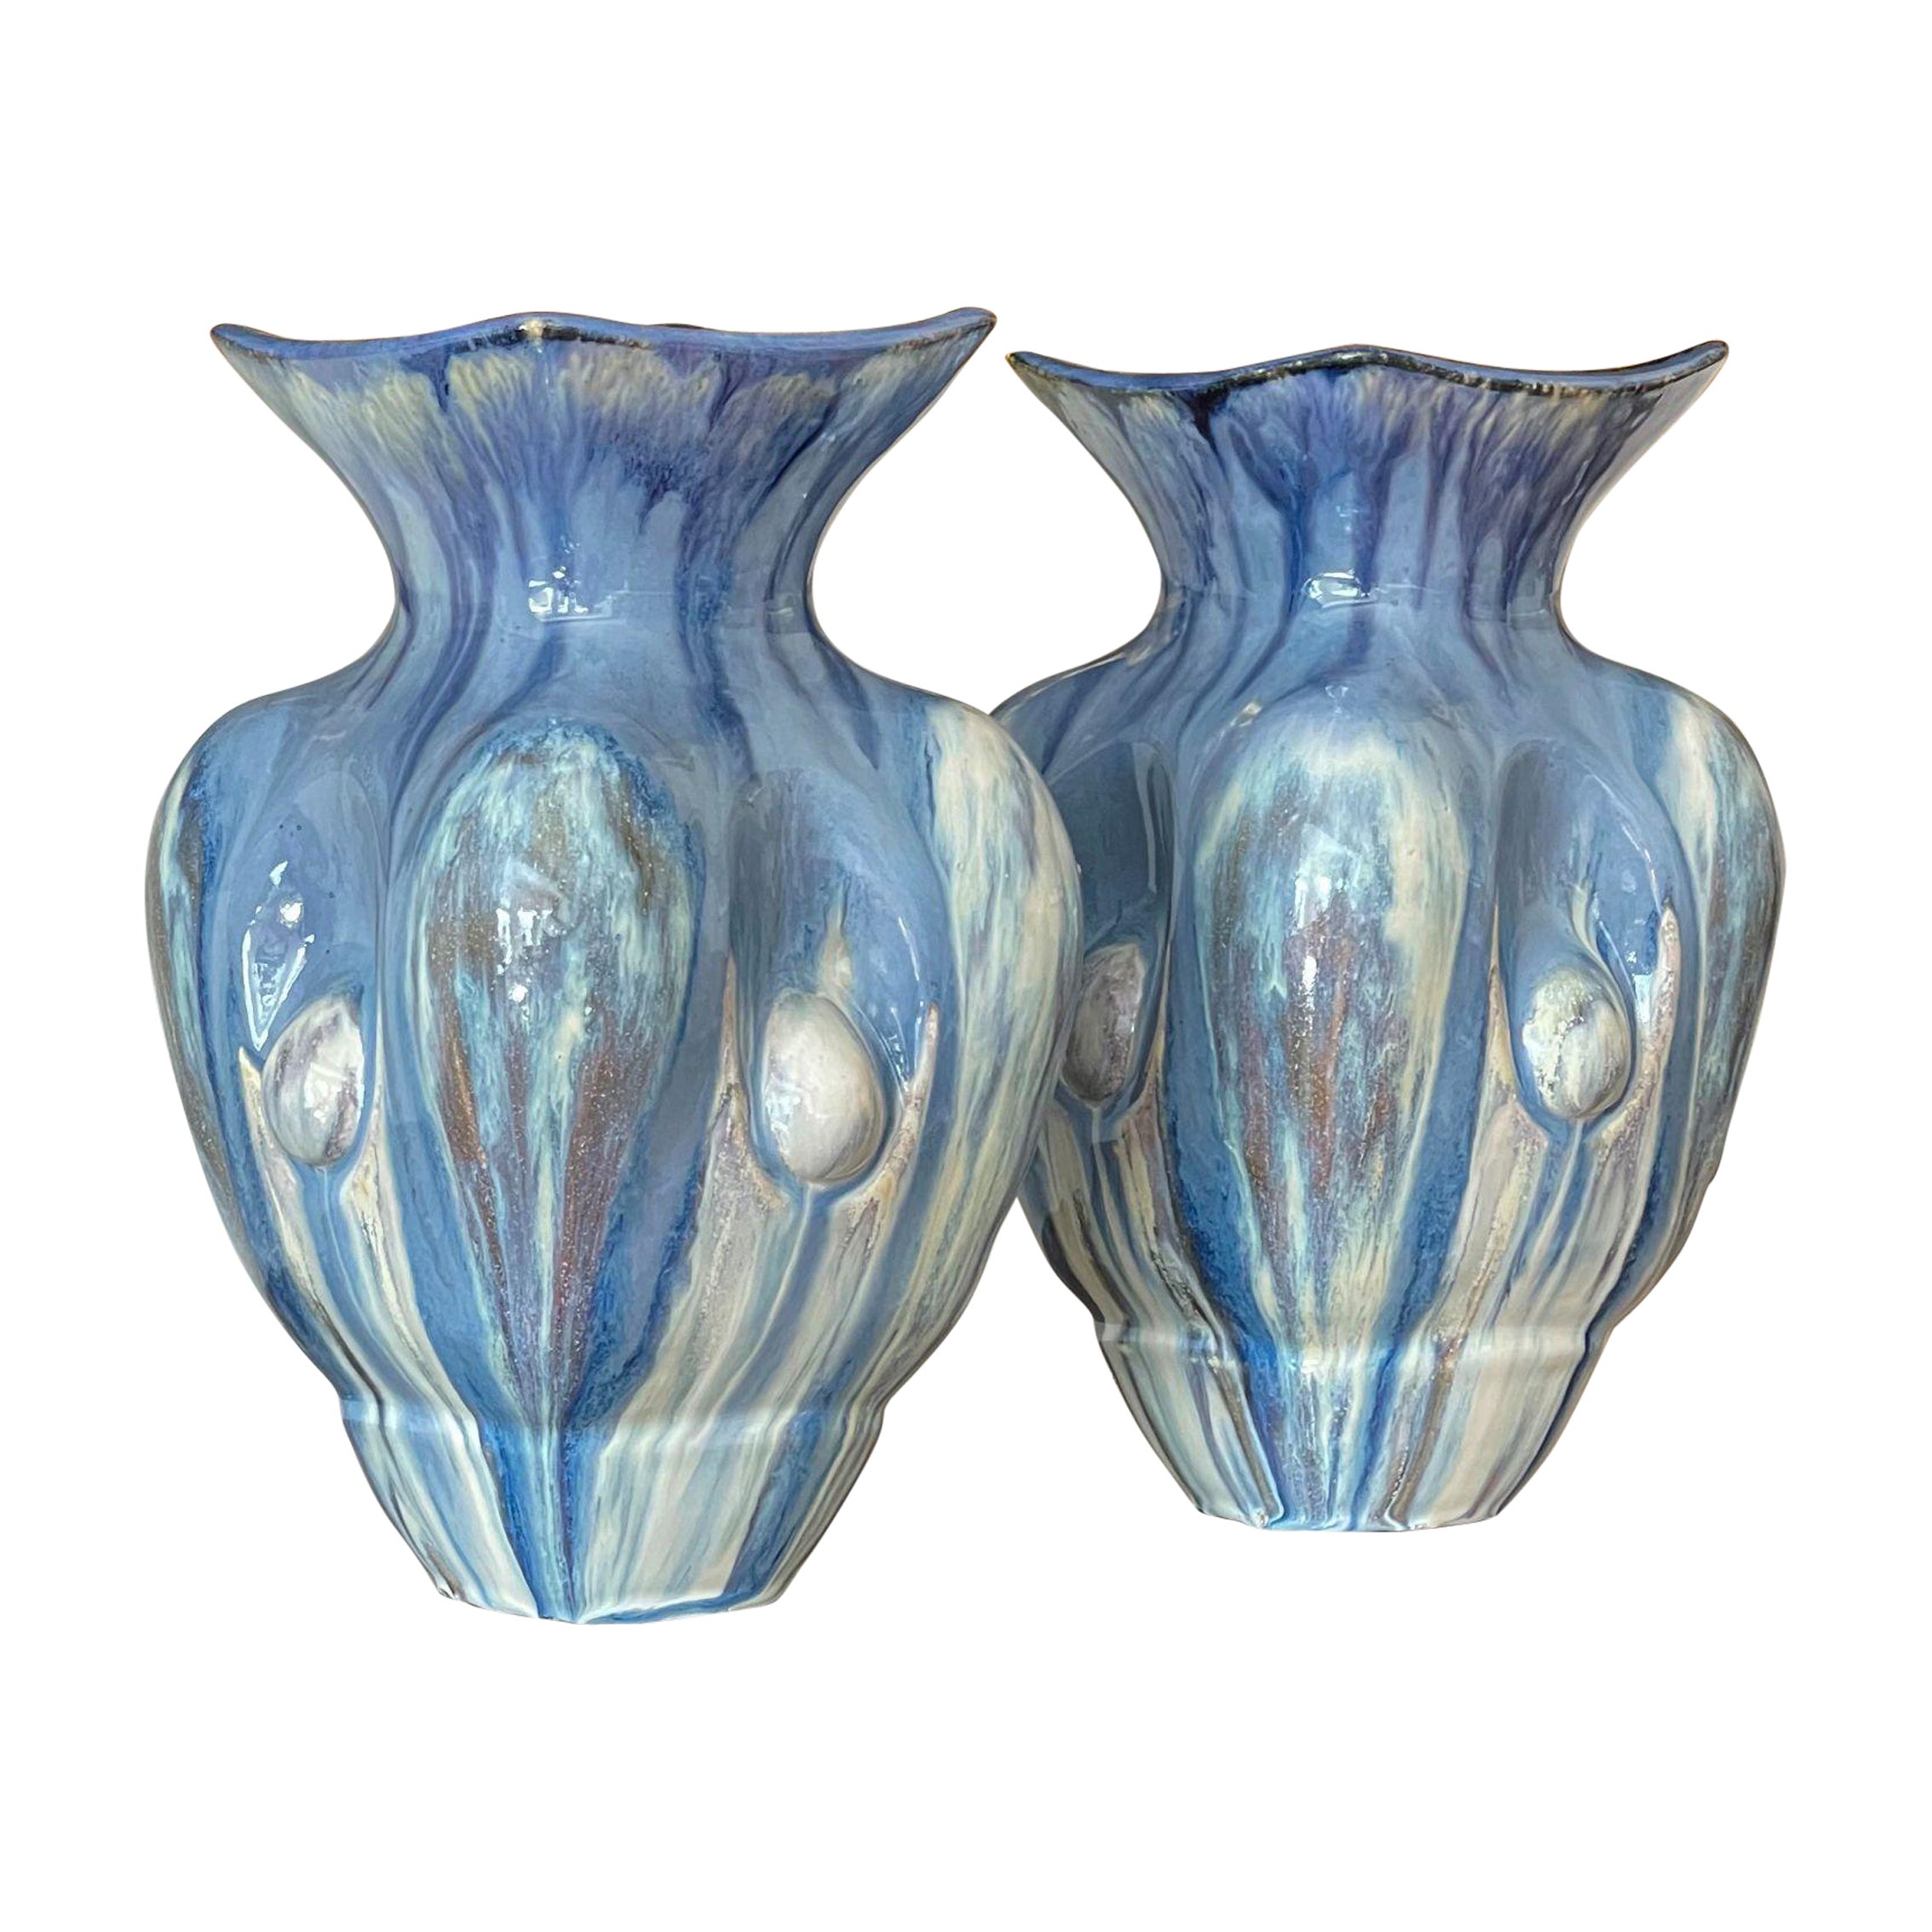 Pair of Sky Blue Ceramic Vases Contemporary 21st Century Italian Unique Piece